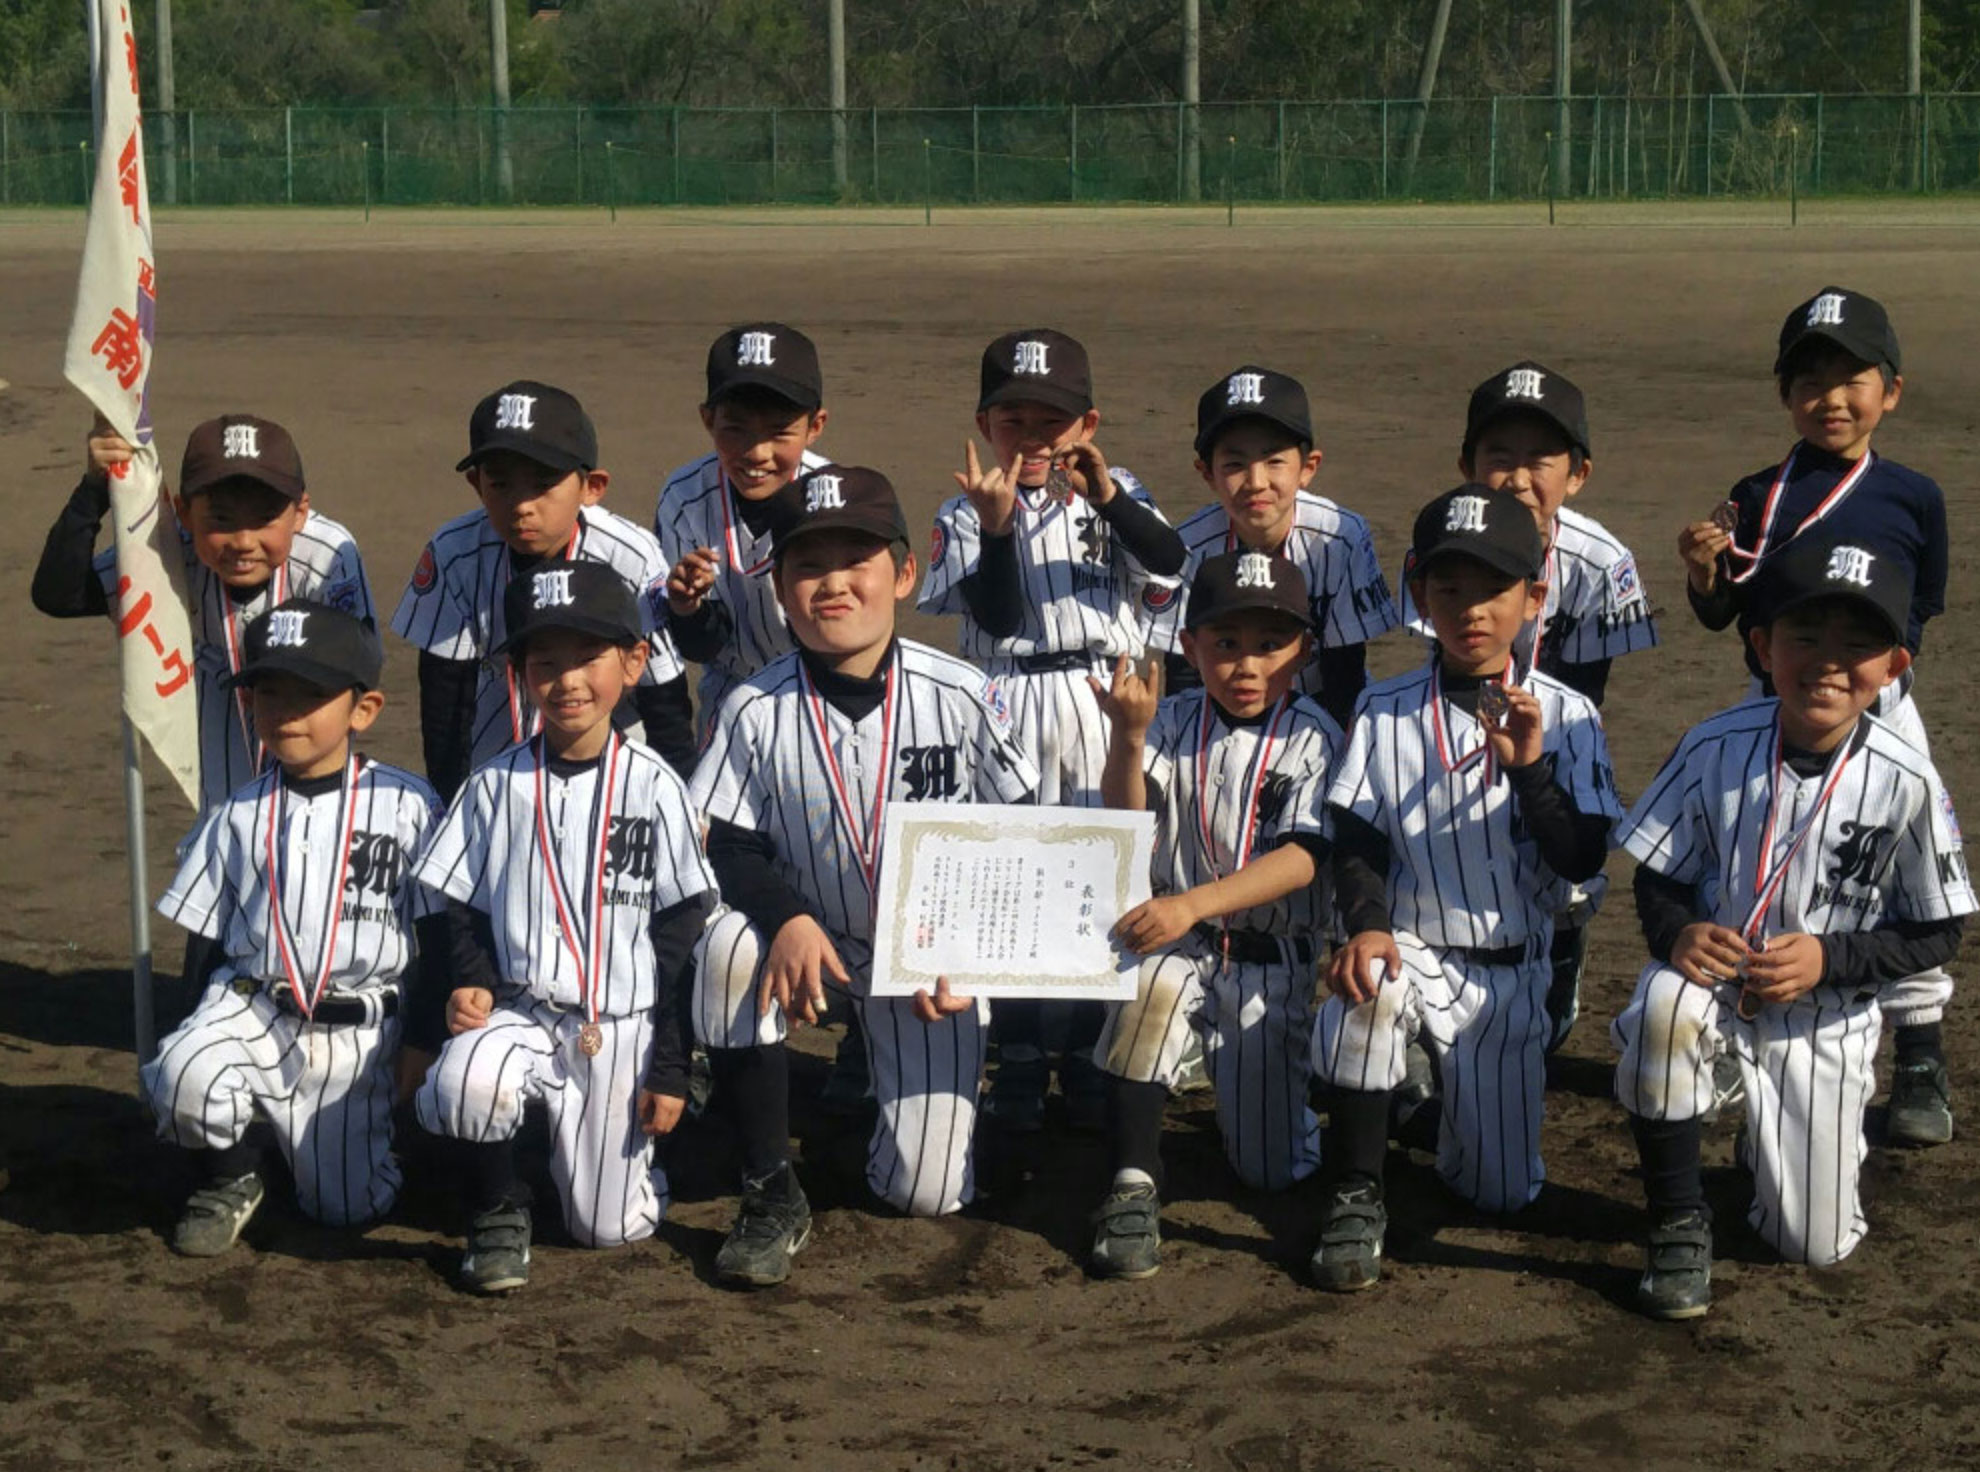 少年硬式野球チーム「南京都リトルリーグ」